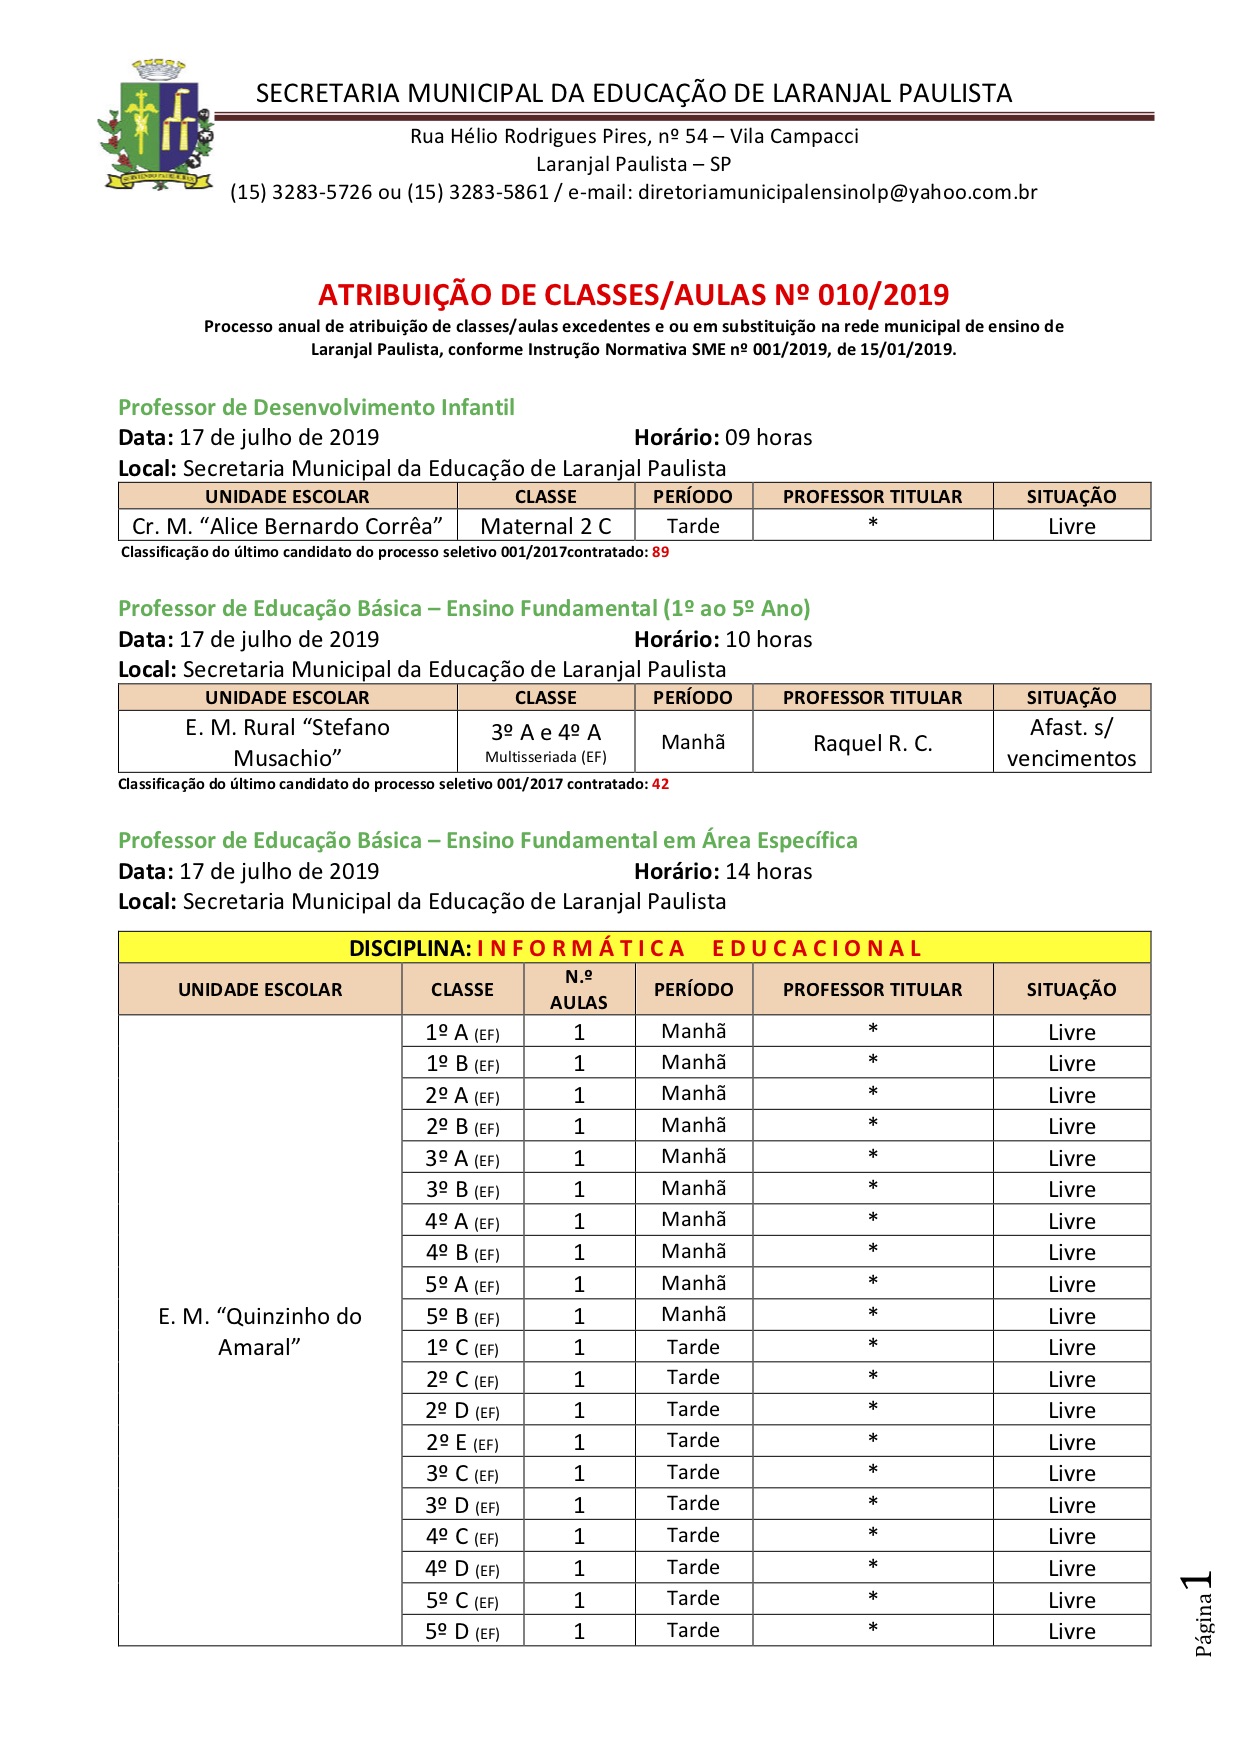 Atribuição de classes e ou aulas excedentes nº 010-2019